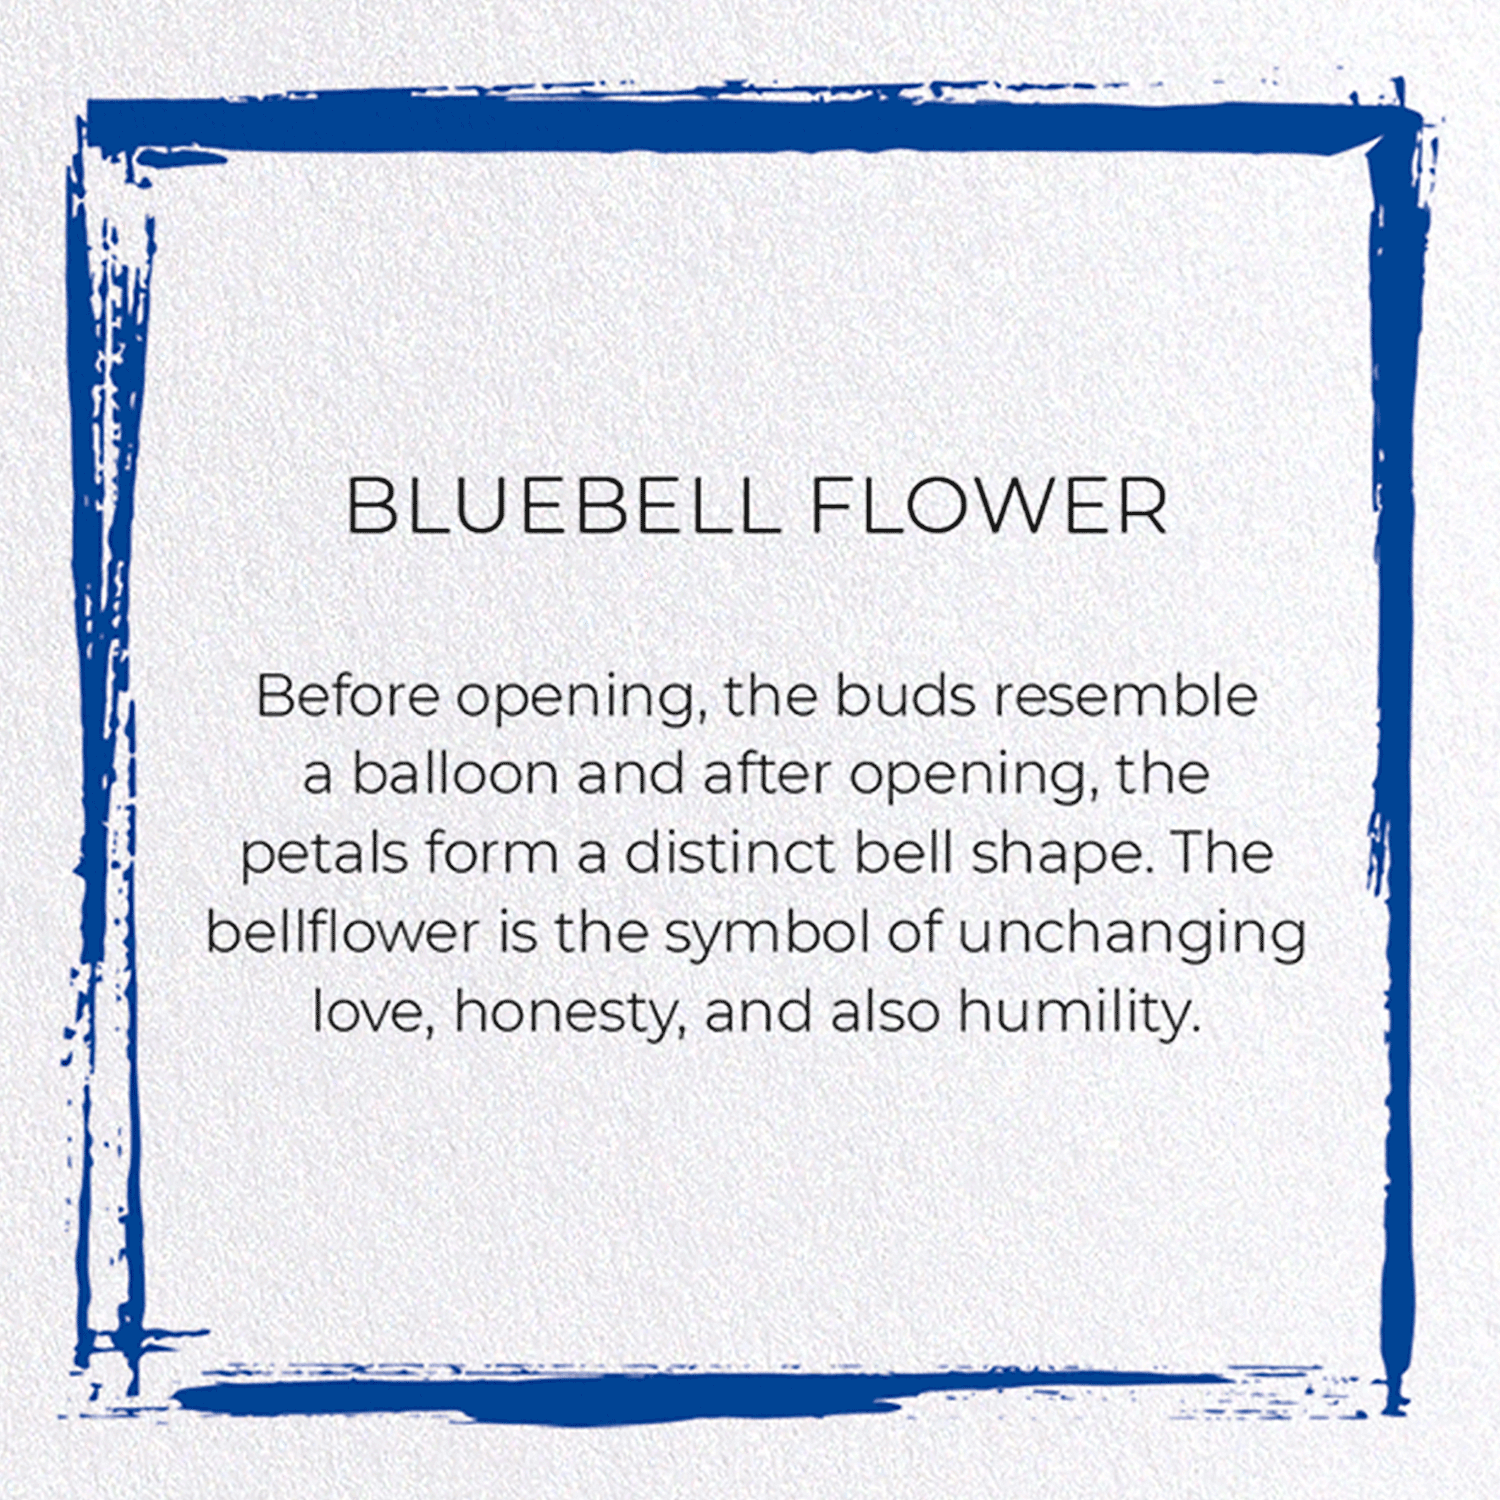 BLUEBELL FLOWER